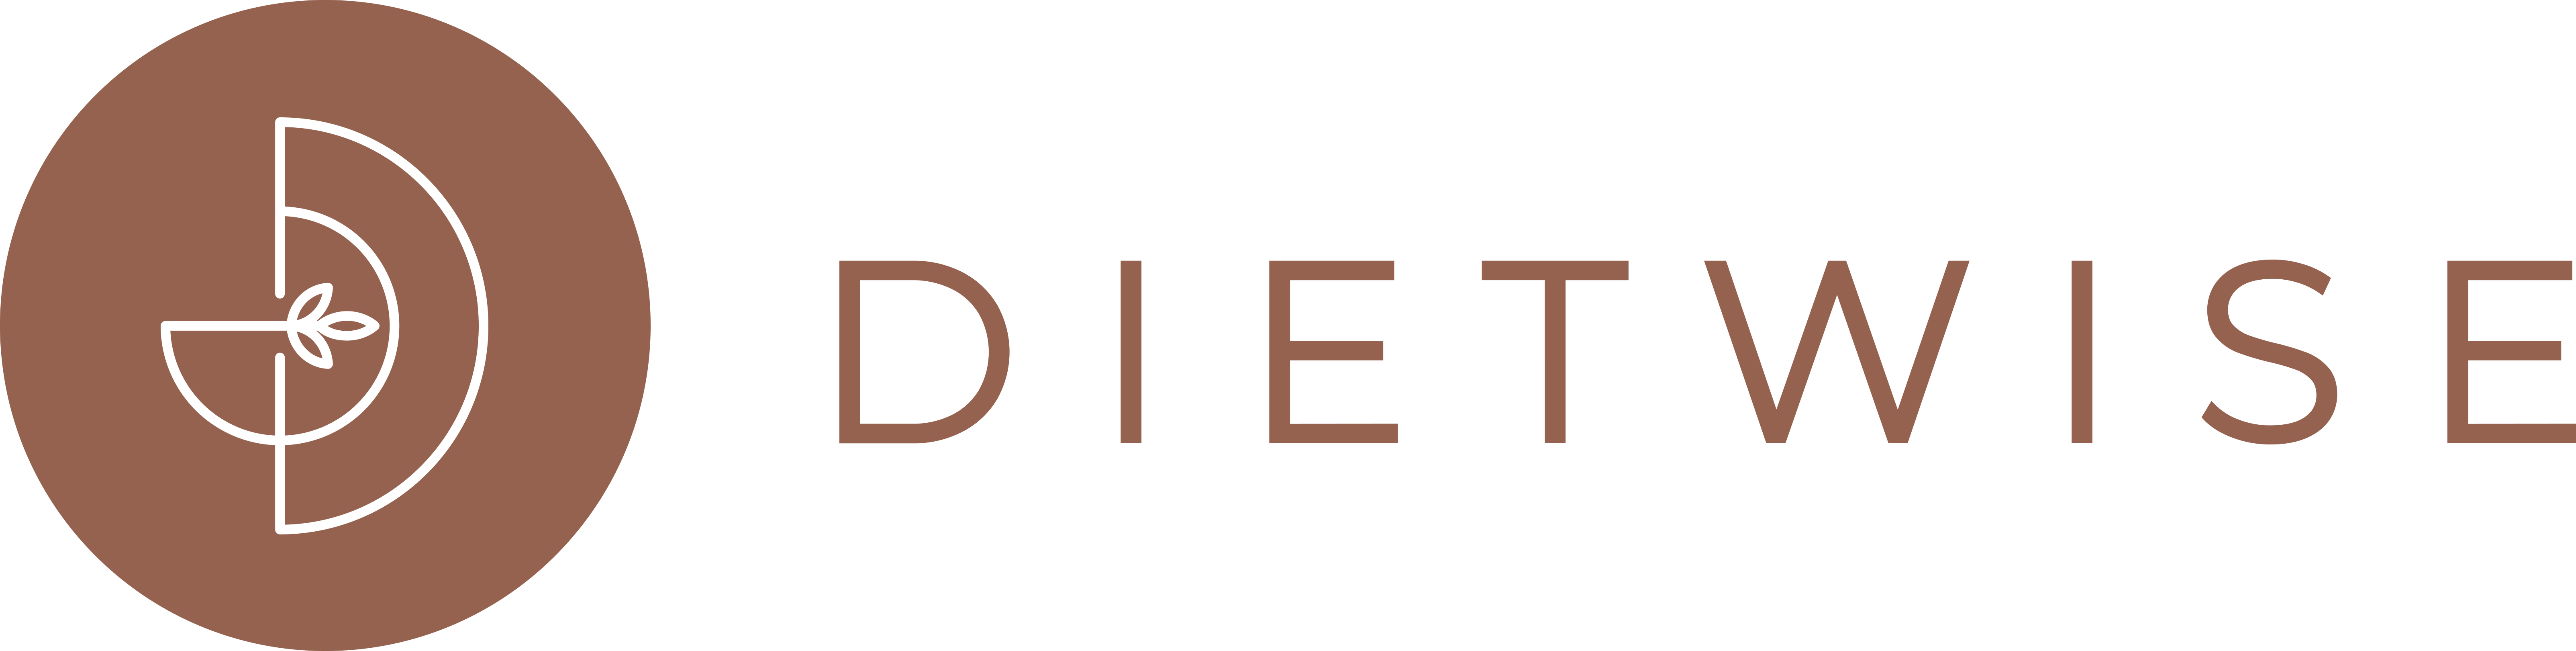 dietwise.net.au